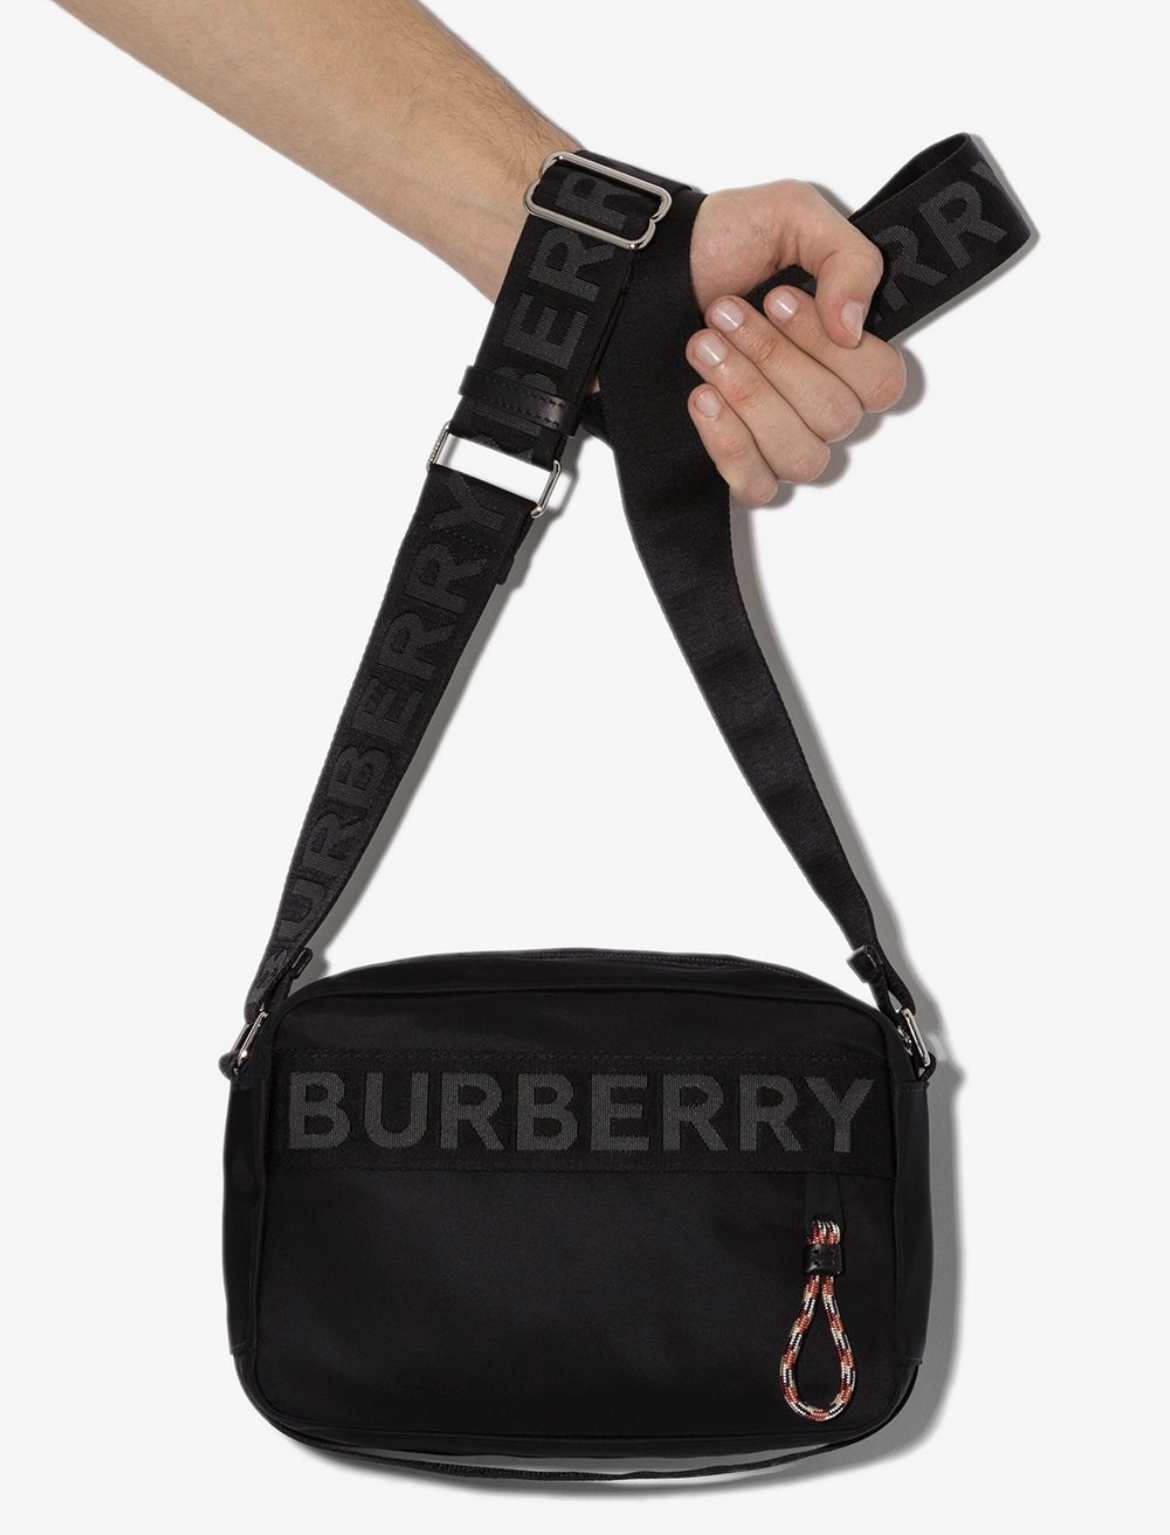 Burberry logo crossbody bag